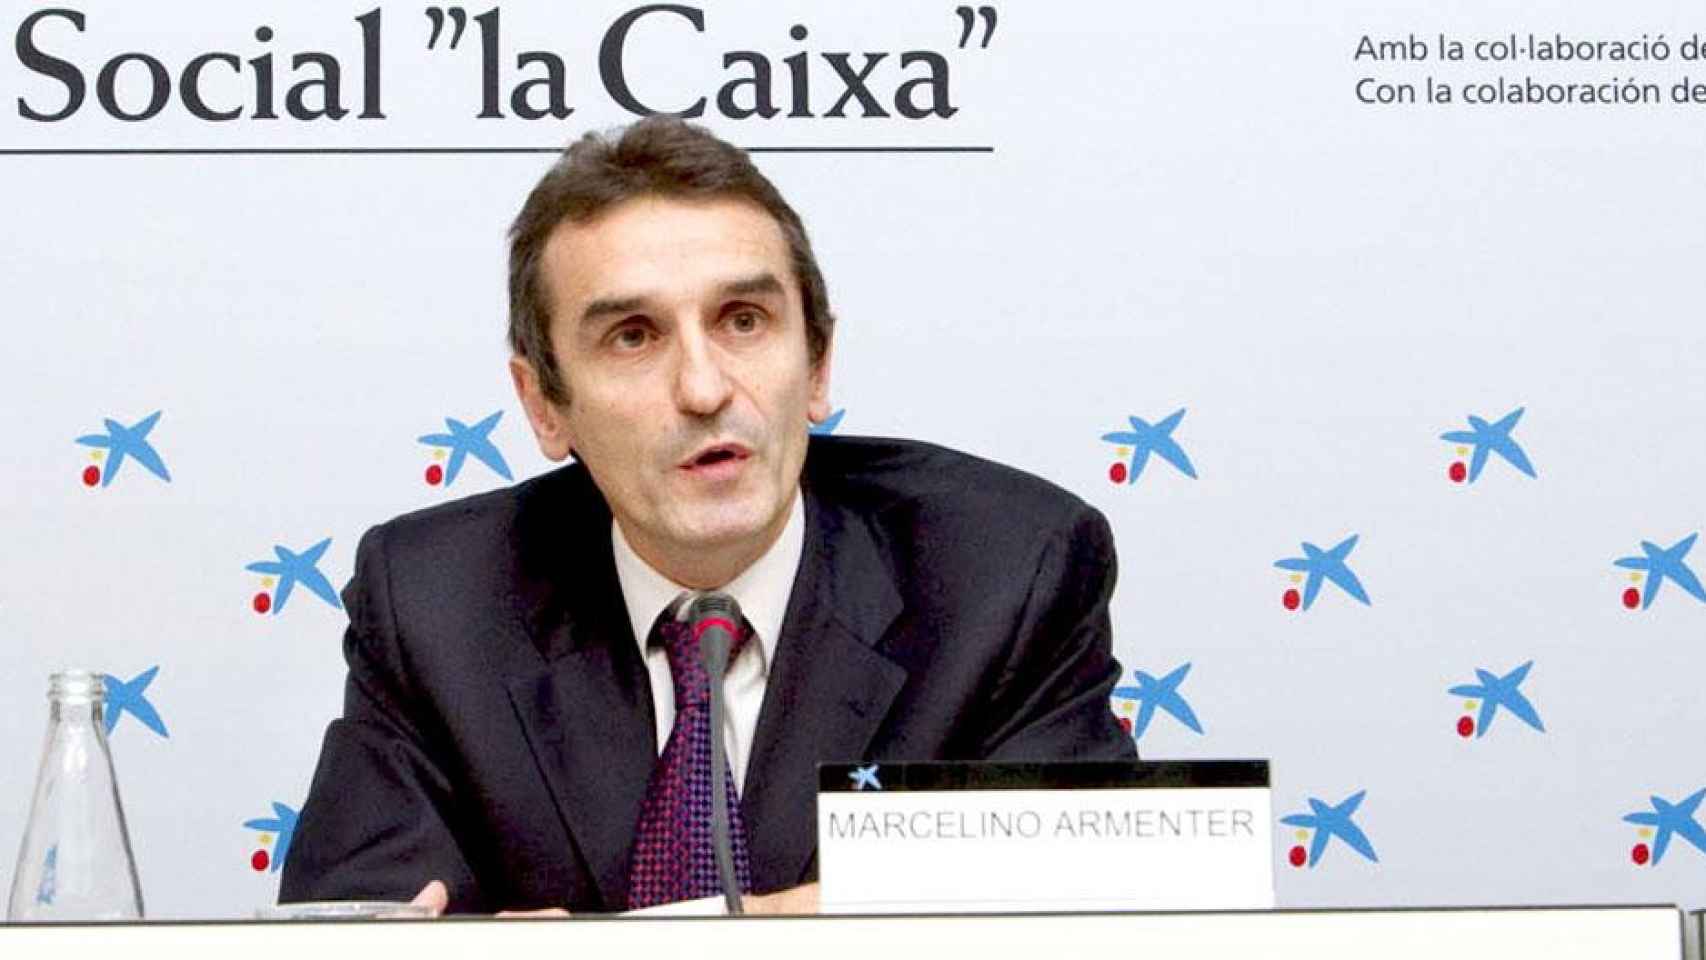 Marcelino Armenter, exconsejero delegado de Criteria Caixa, en una imagen de archivo / LA CAIXA